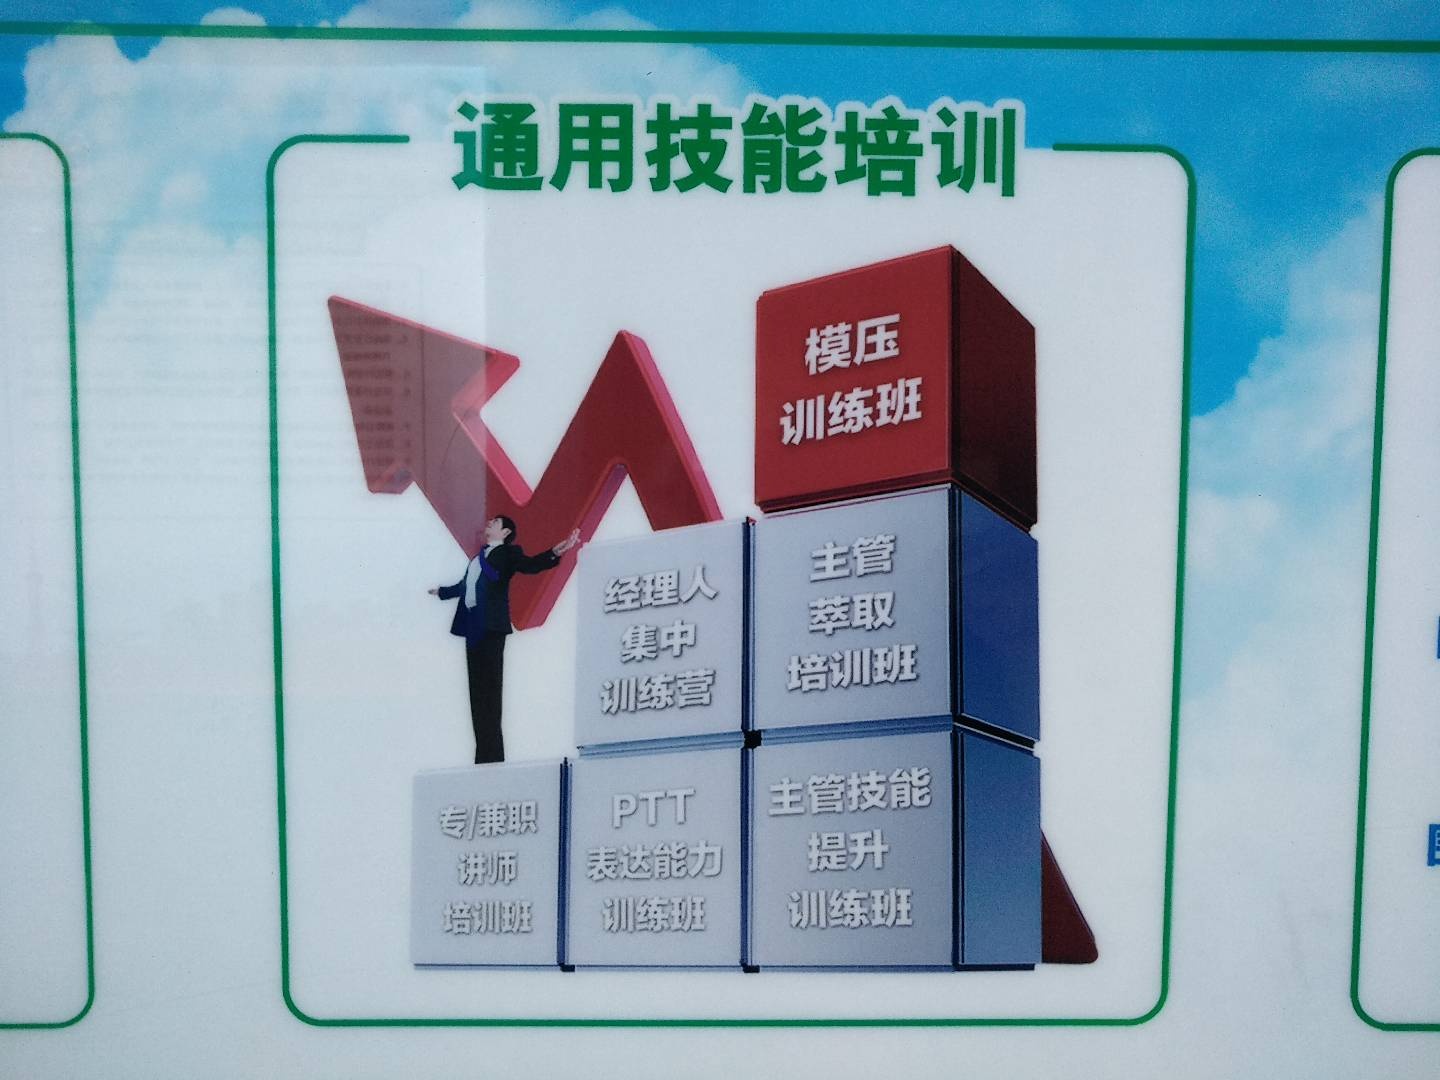 中国人寿保险股份有限公司北京市分公司东城营销服务部